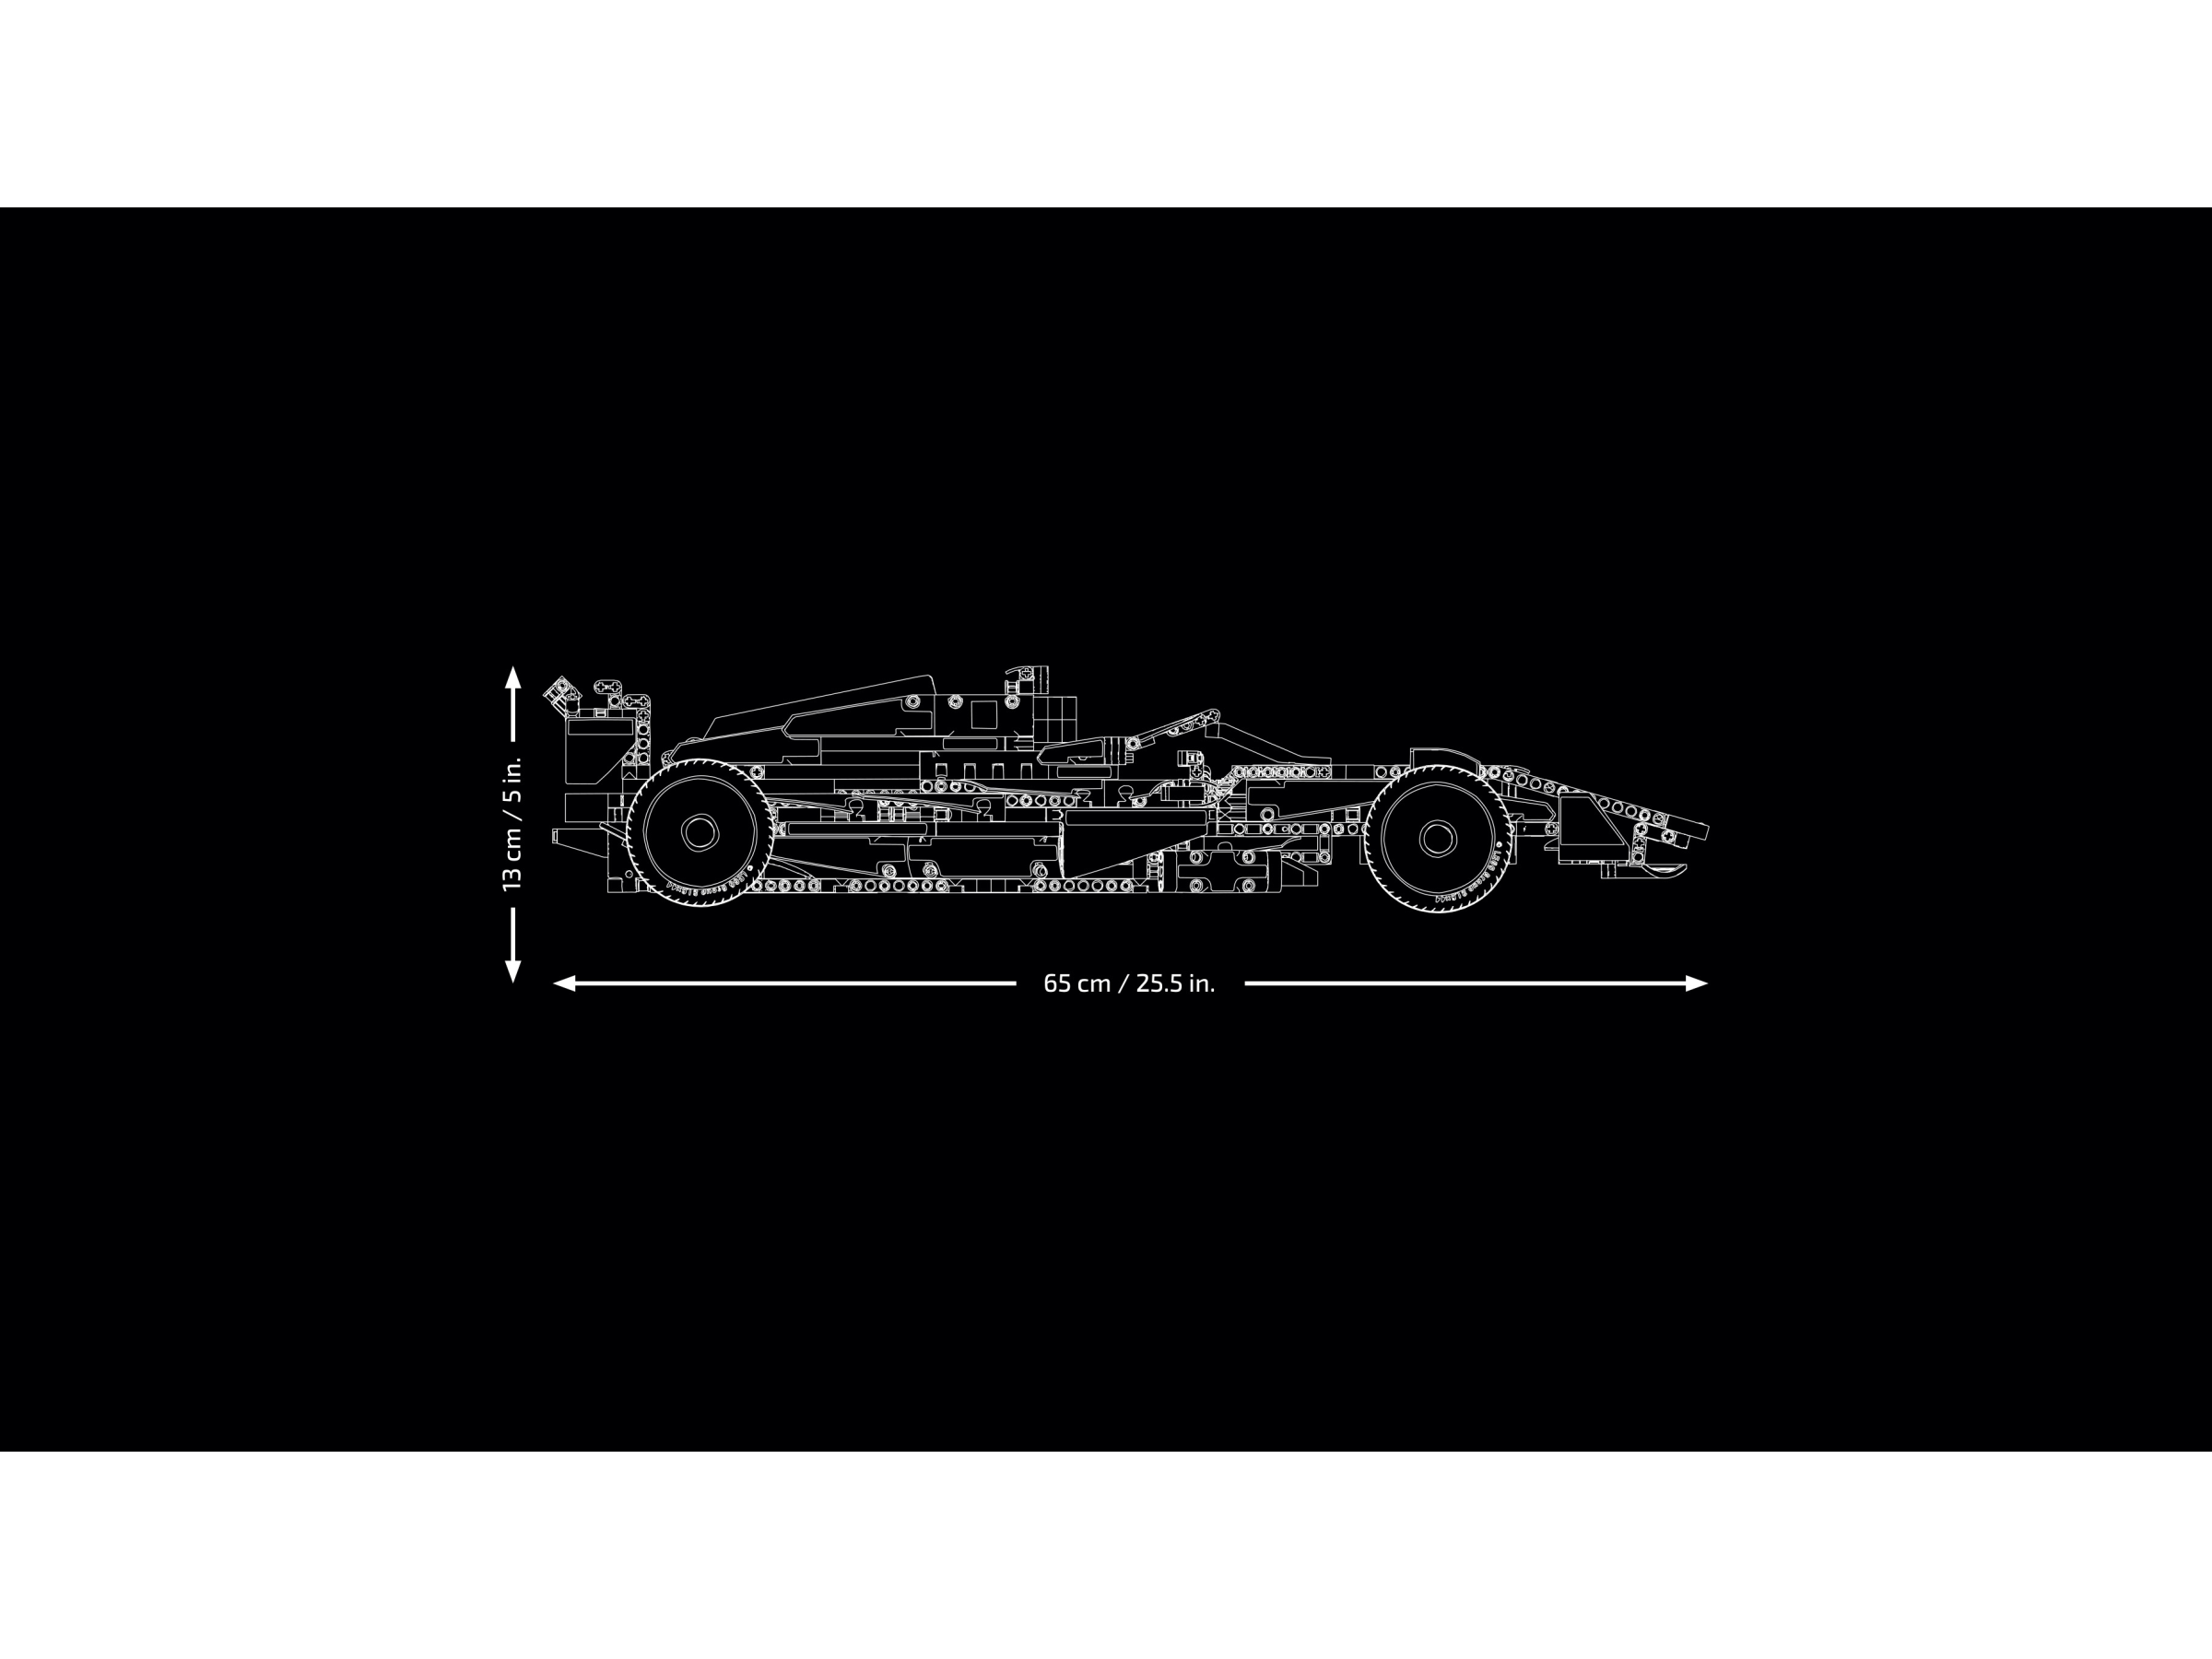 Power Functions Kit for LEGO McLaren F1 #42141 Motor